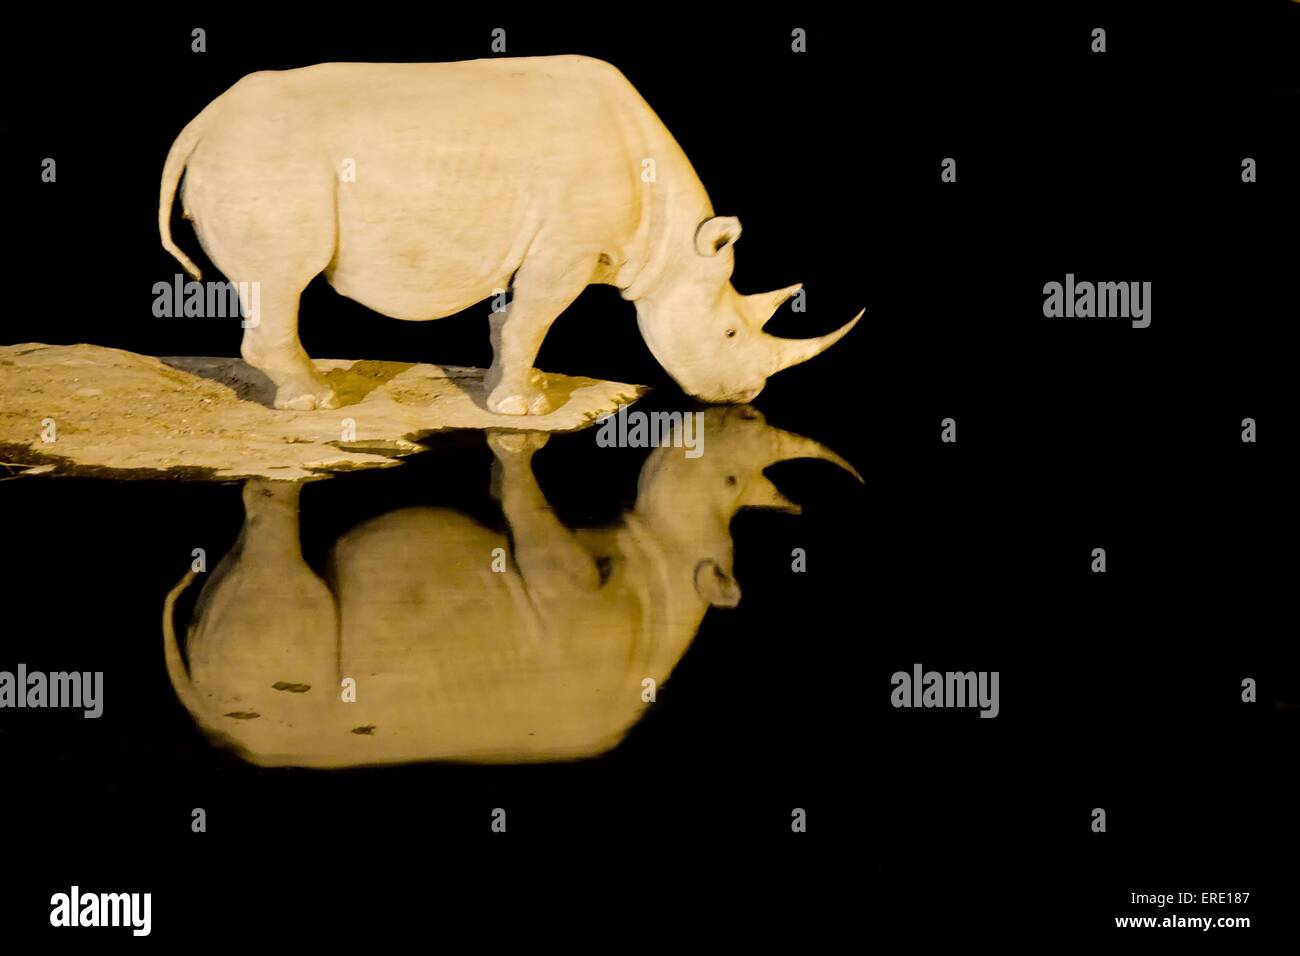 black rhino Stock Photo